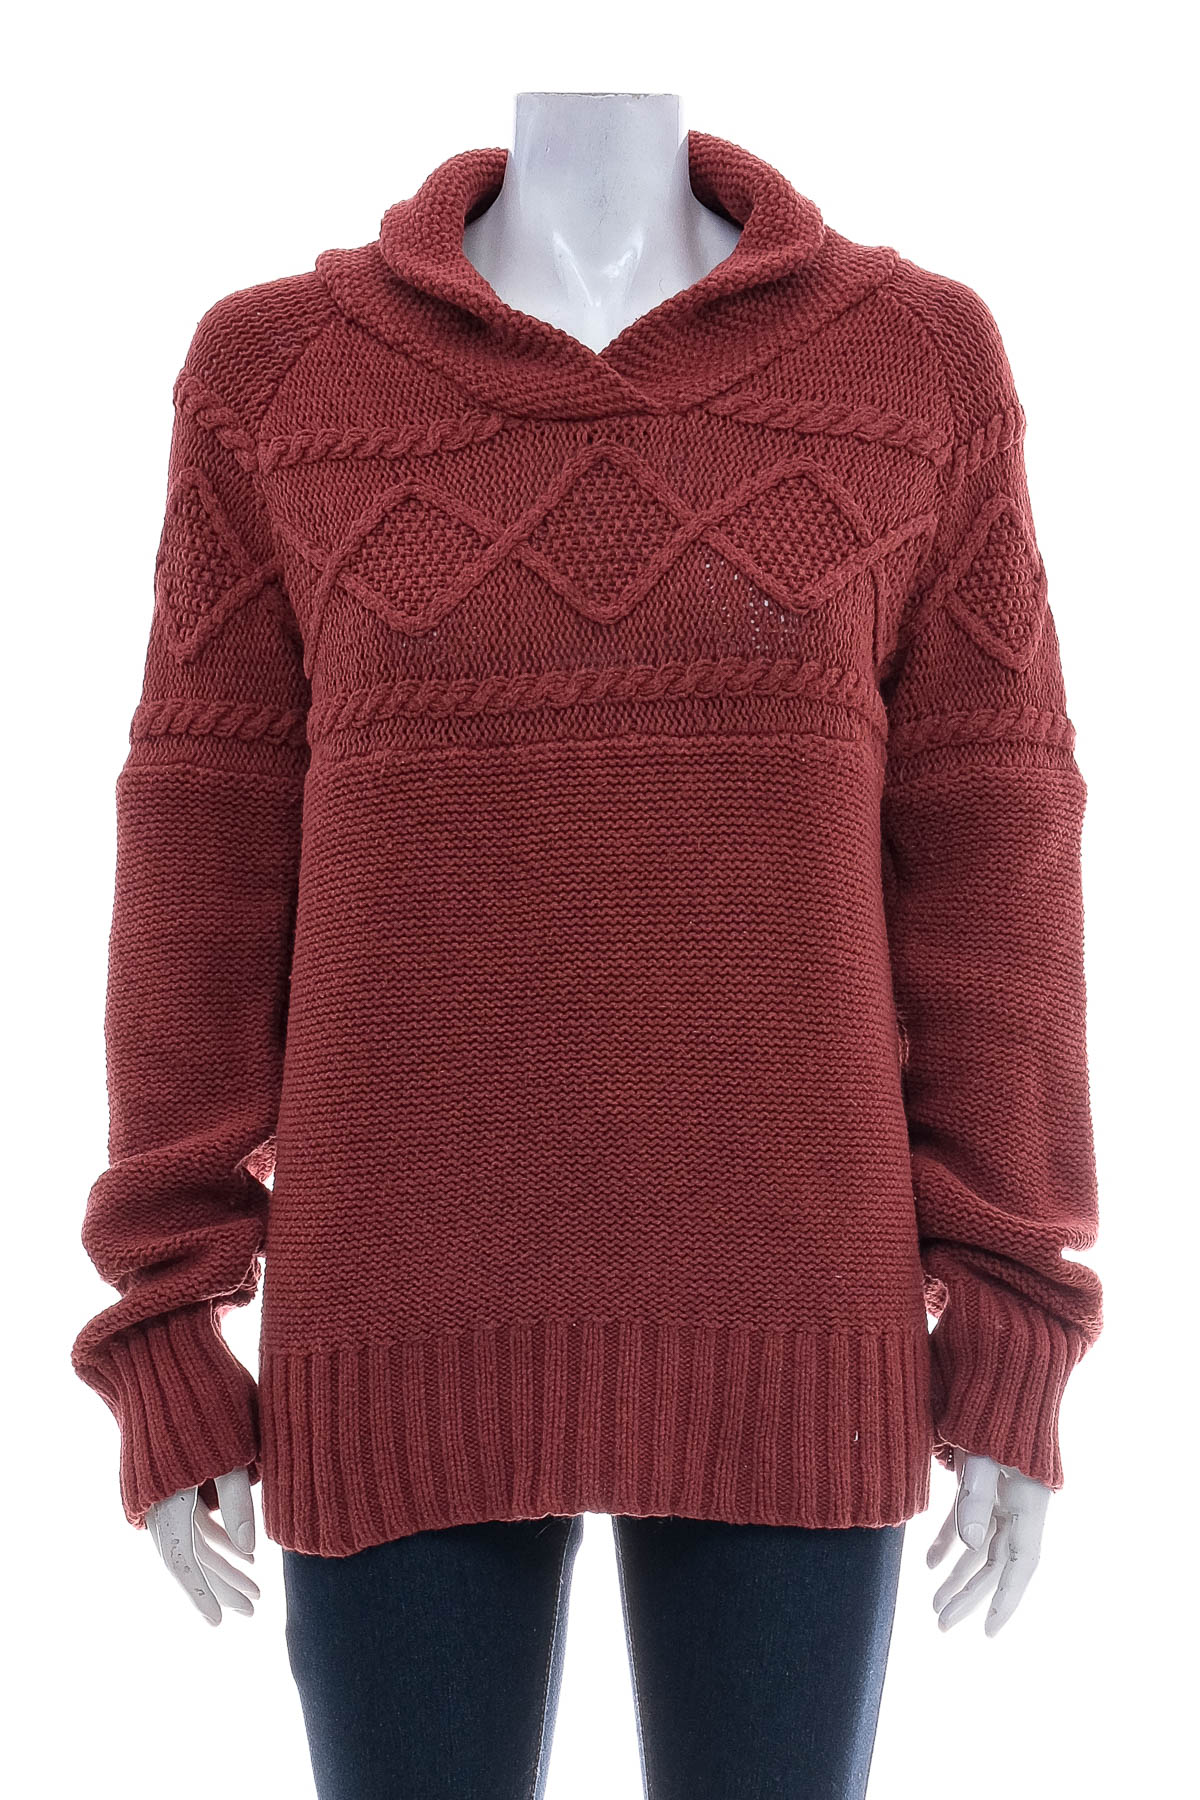 Women's sweater - Timberland - 0